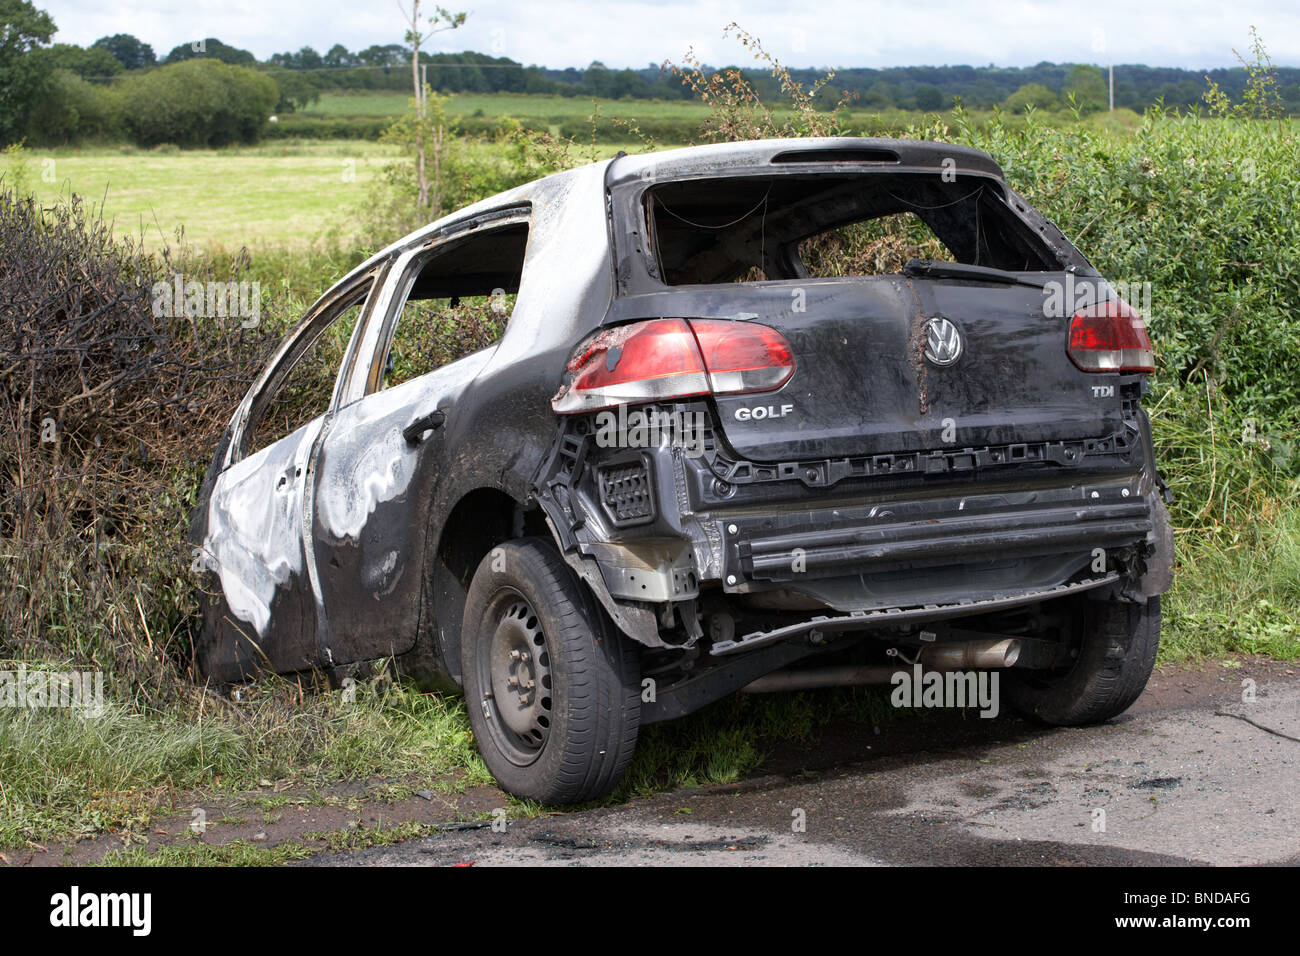 ausgebrannt, gestohlene Volkswagen Golfauto stürzte in einen Graben in Nordirland im Vereinigten Königreich Stockfoto